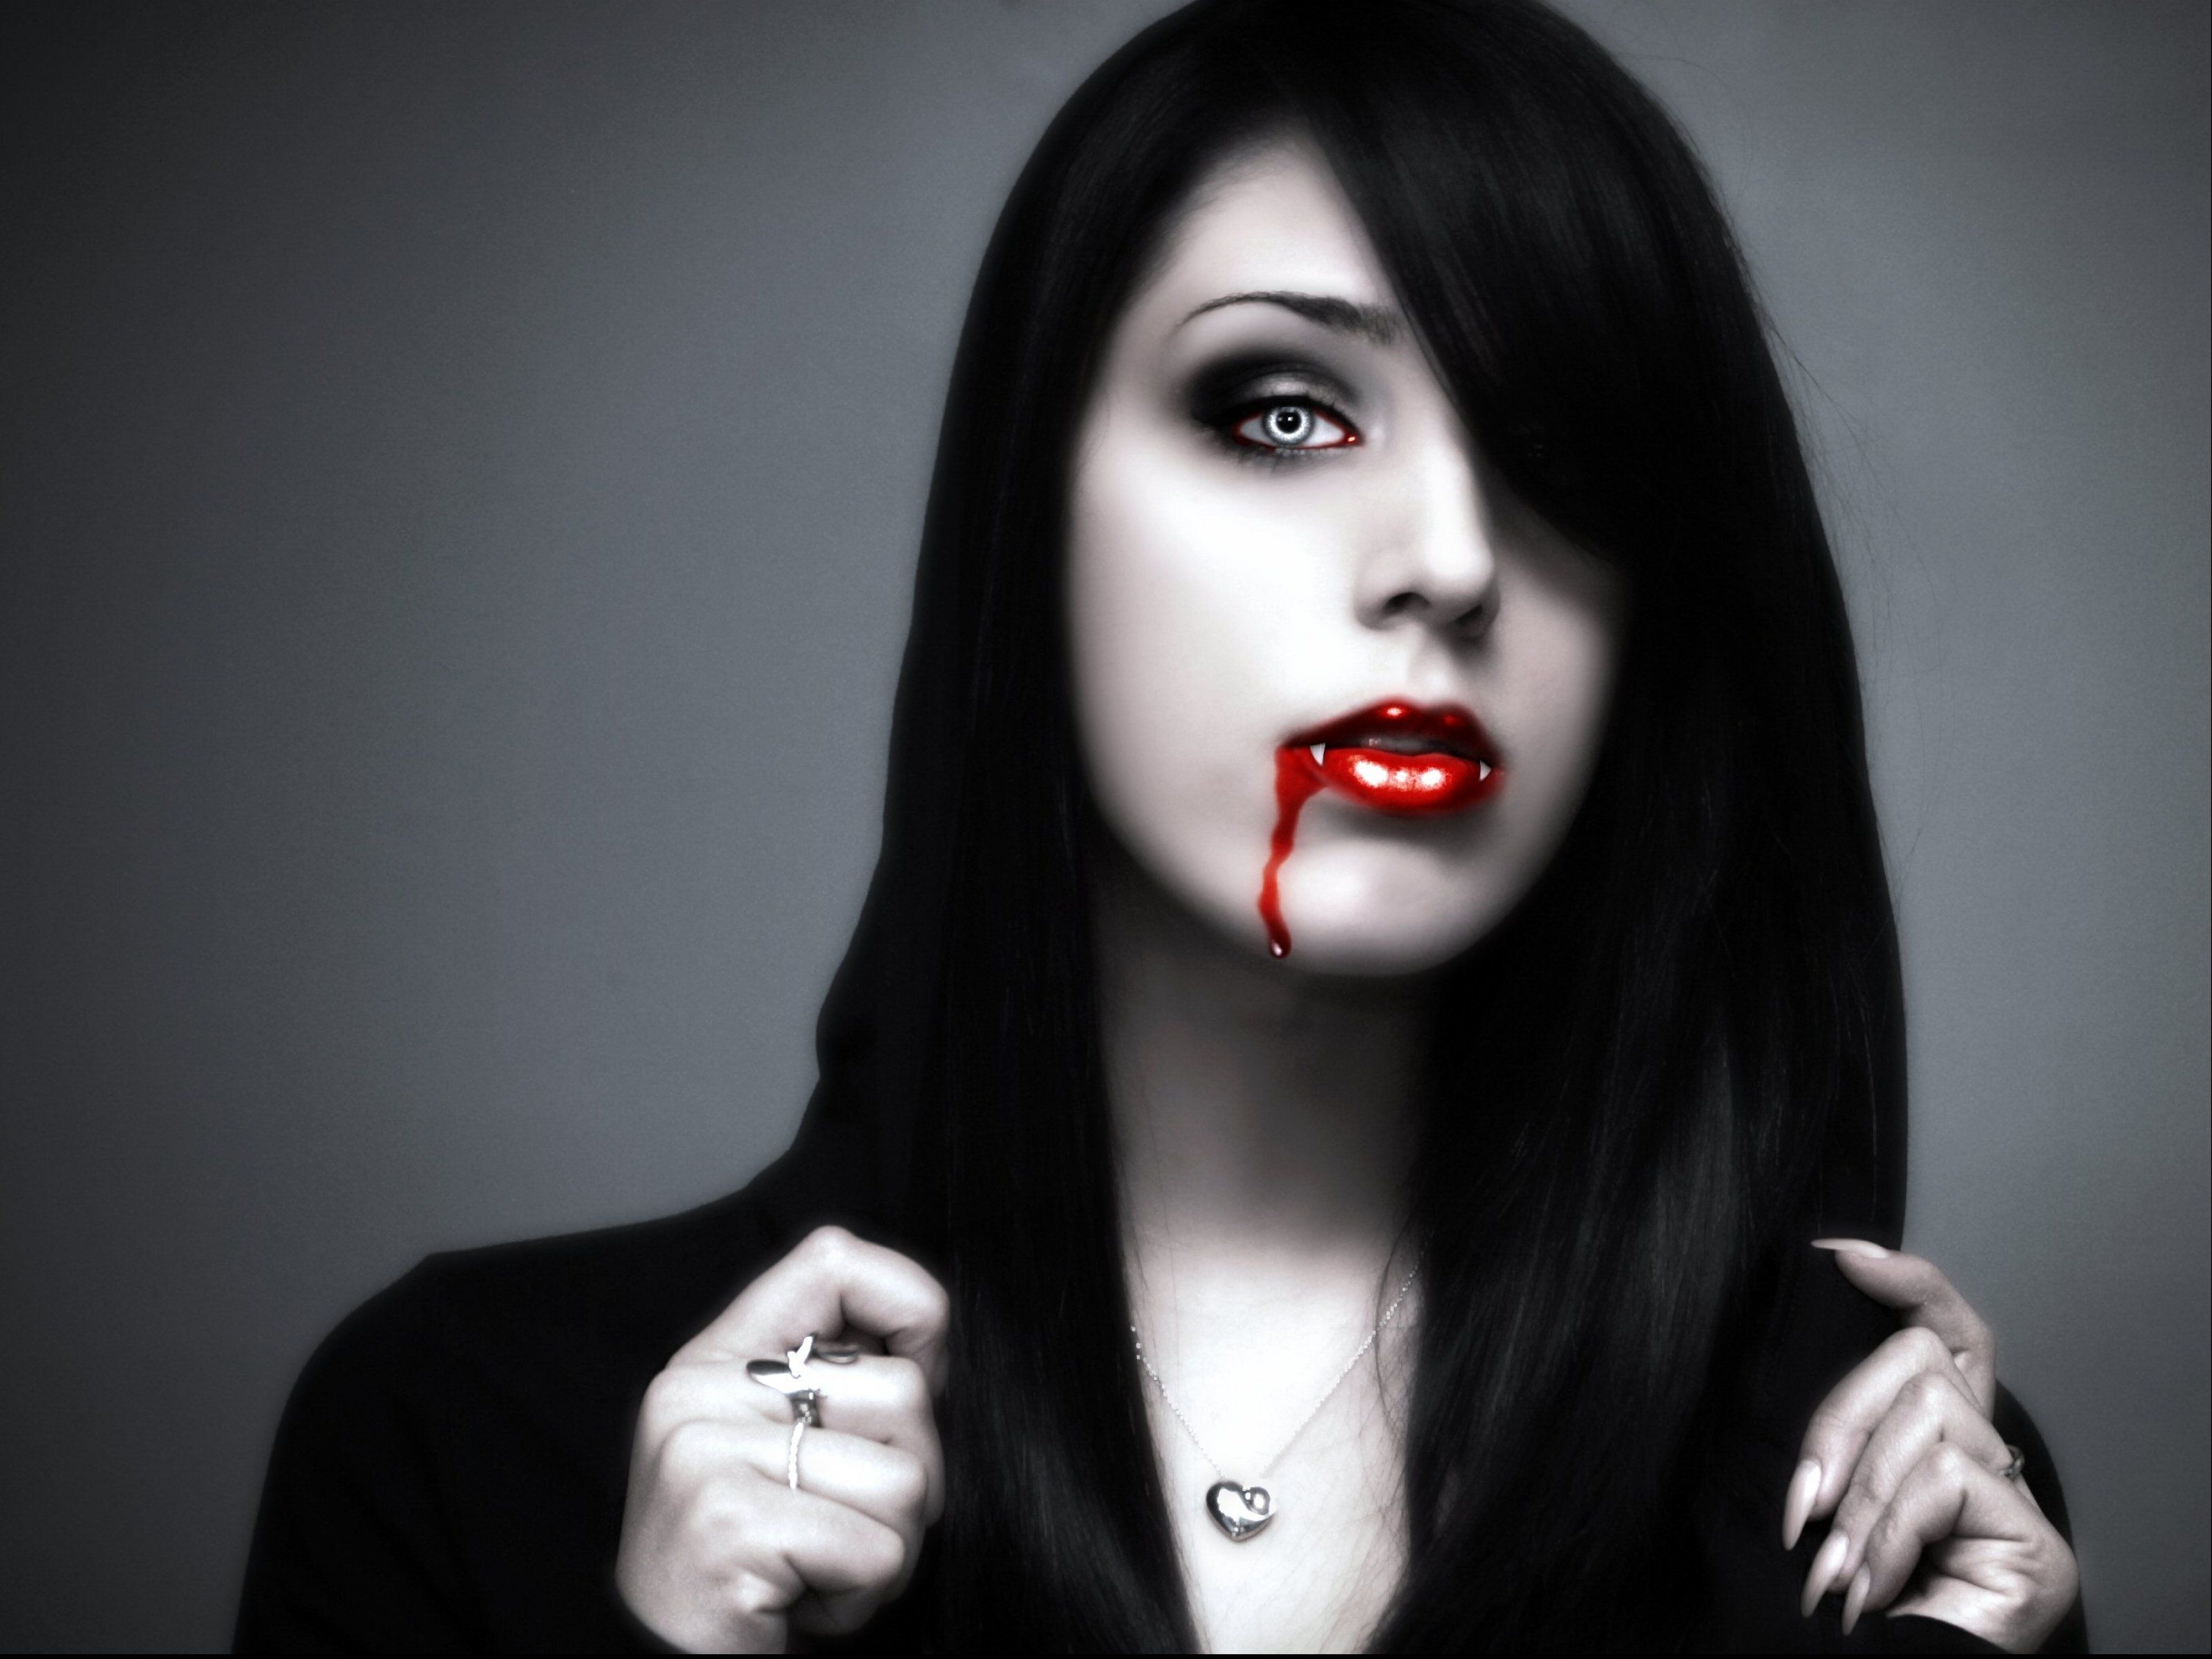 Fantasy artwork art dark vampire gothic girl girls horror evil blood wallpaperx2400